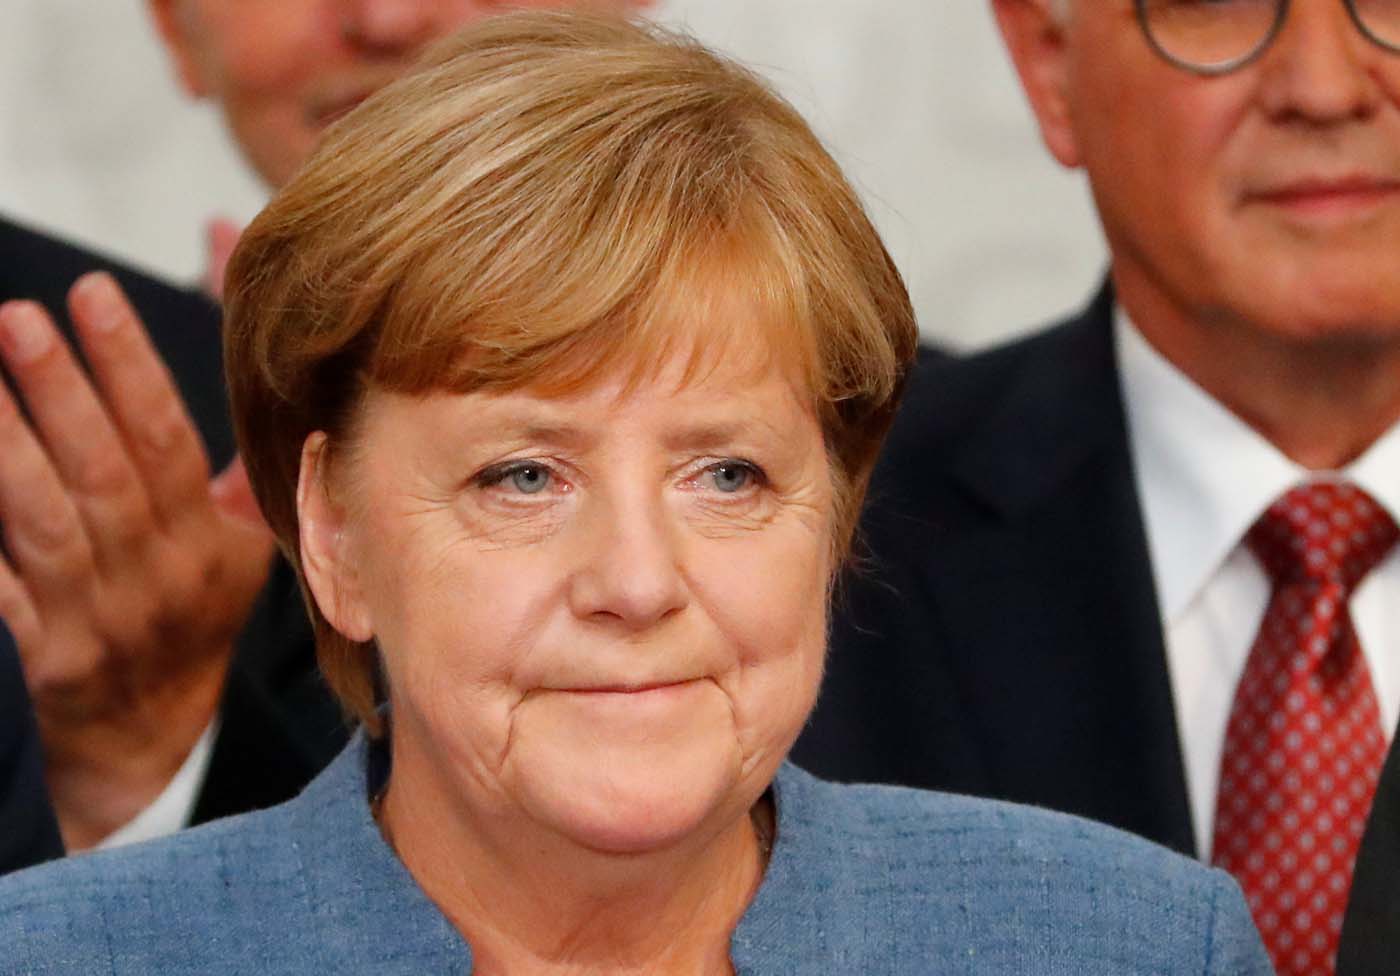 Merkel ve como una “buena noticia” liberación de periodista alemana presa en Turquía